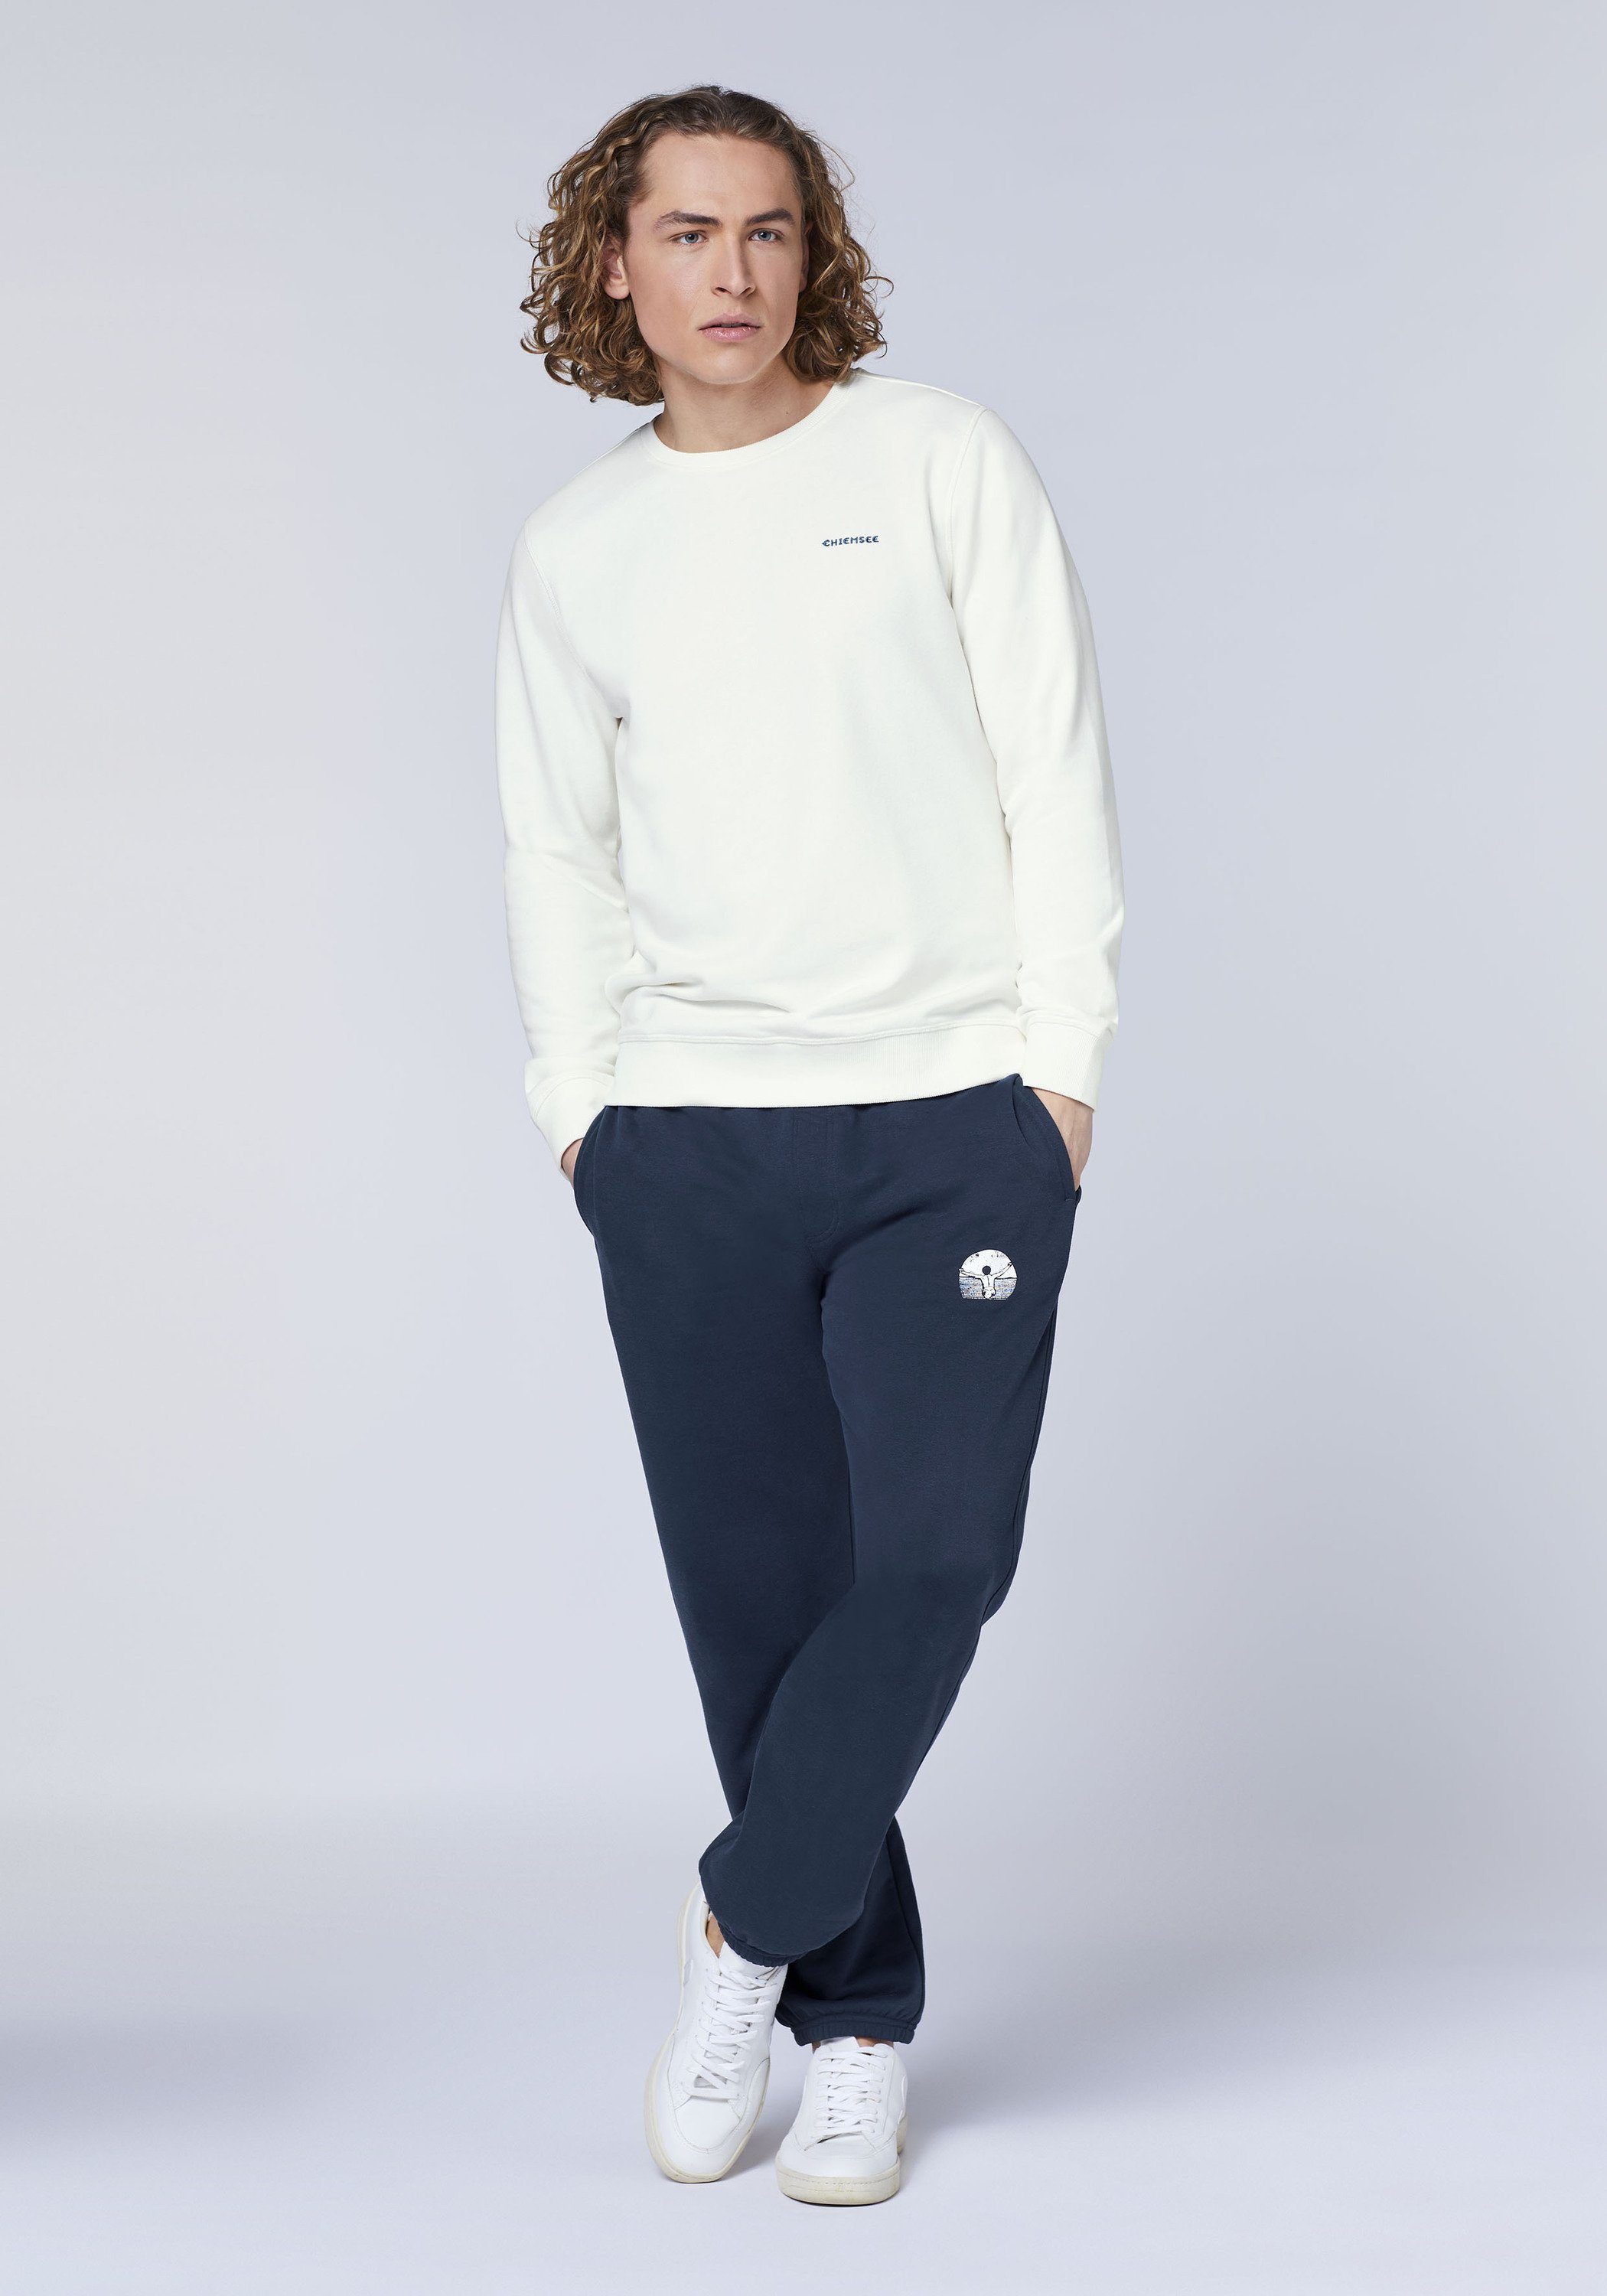 Star White Jumper-Motiv mit 11-4202 1 Chiemsee Sweater Sweatshirt